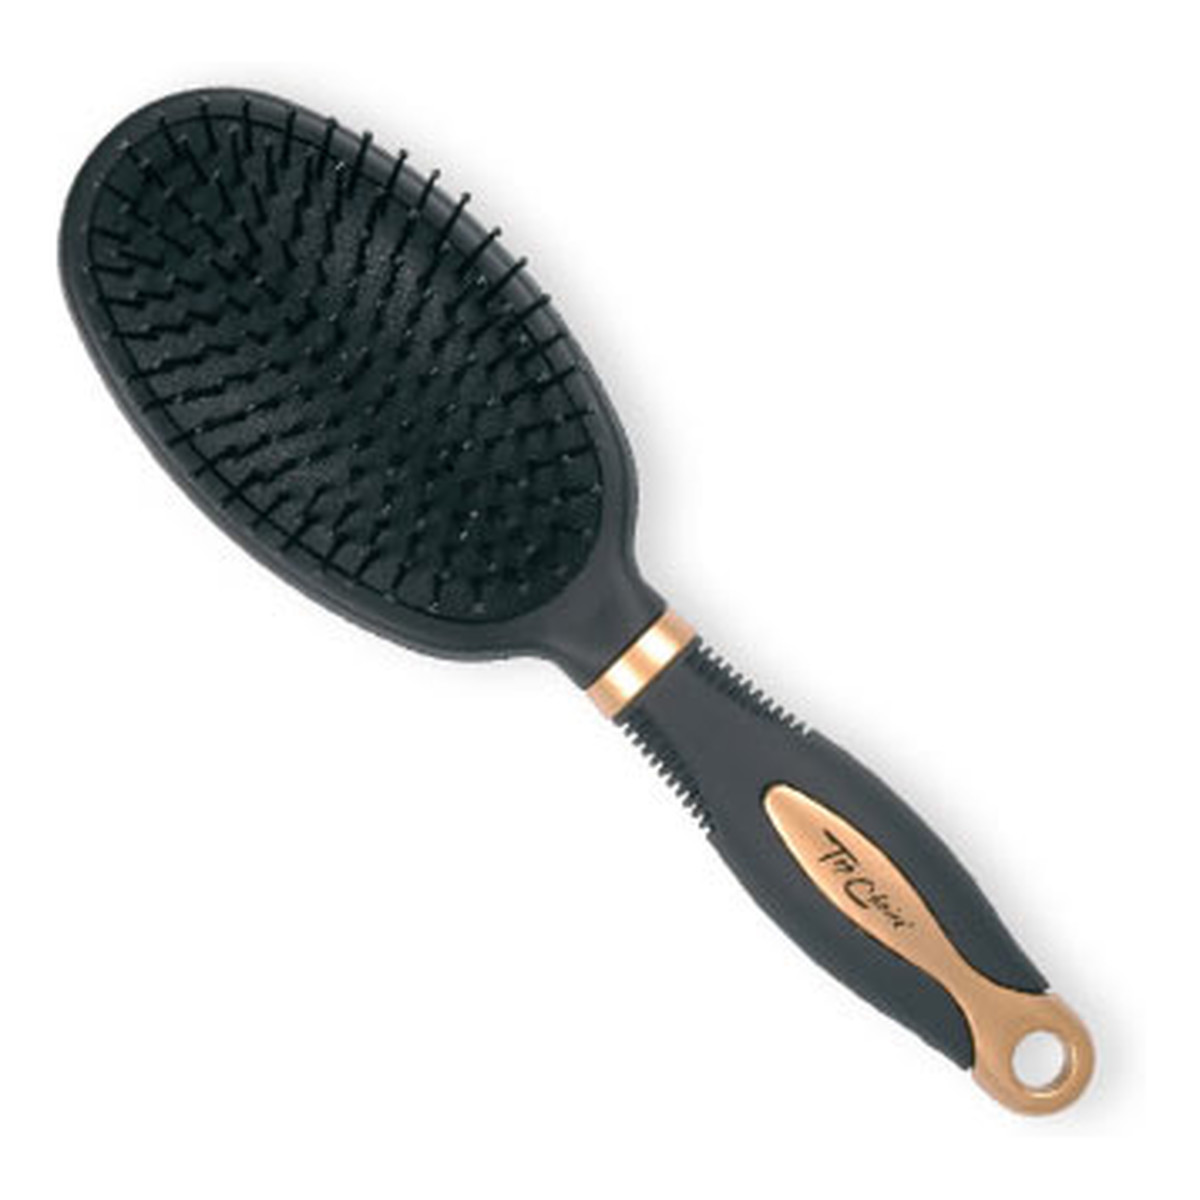 Top Choice Exclusive Hair Brush Szczotka Do Włosów Black/Gold